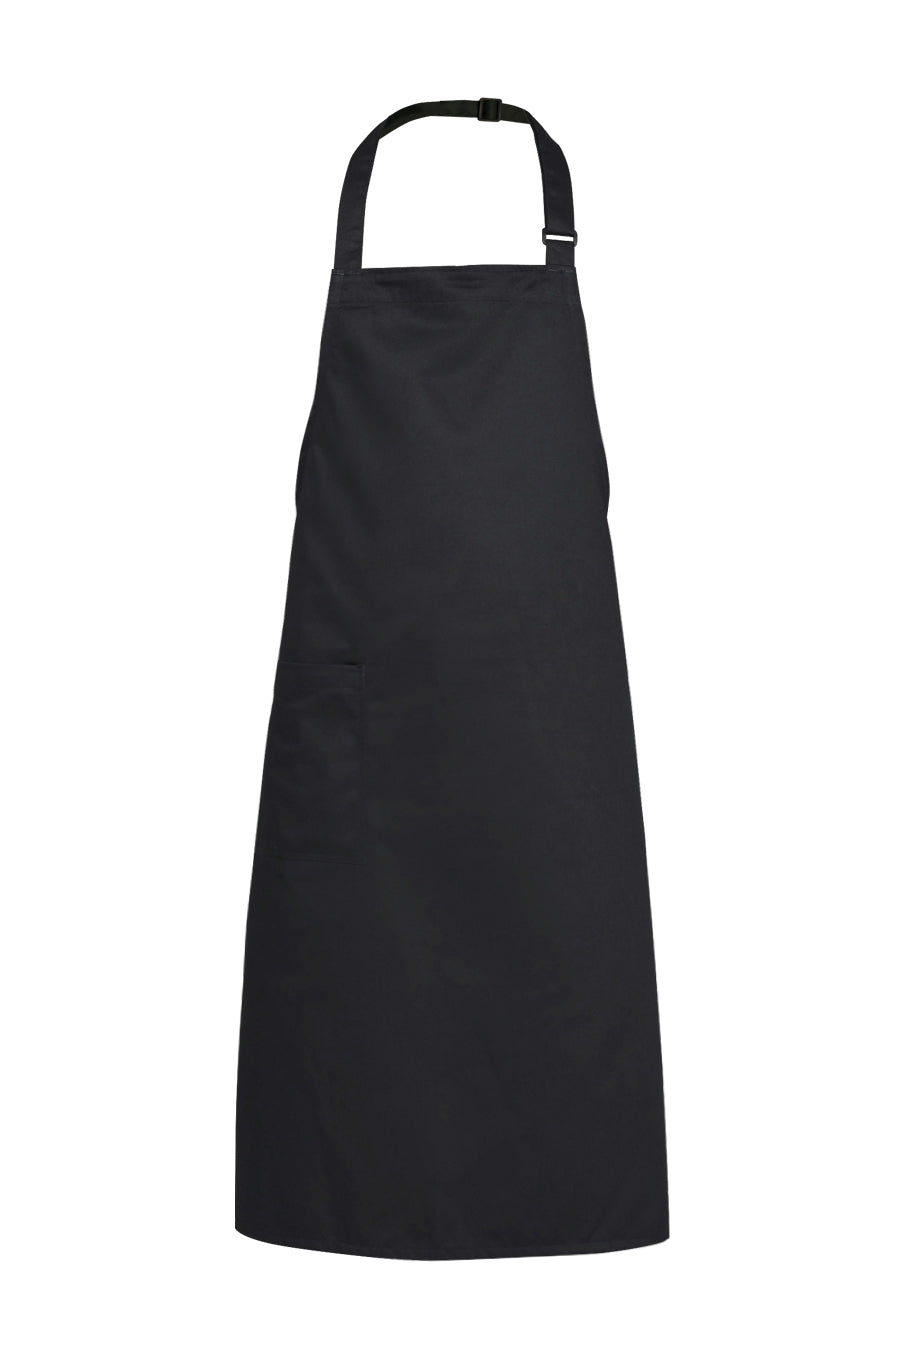 black bib apron, black full apron